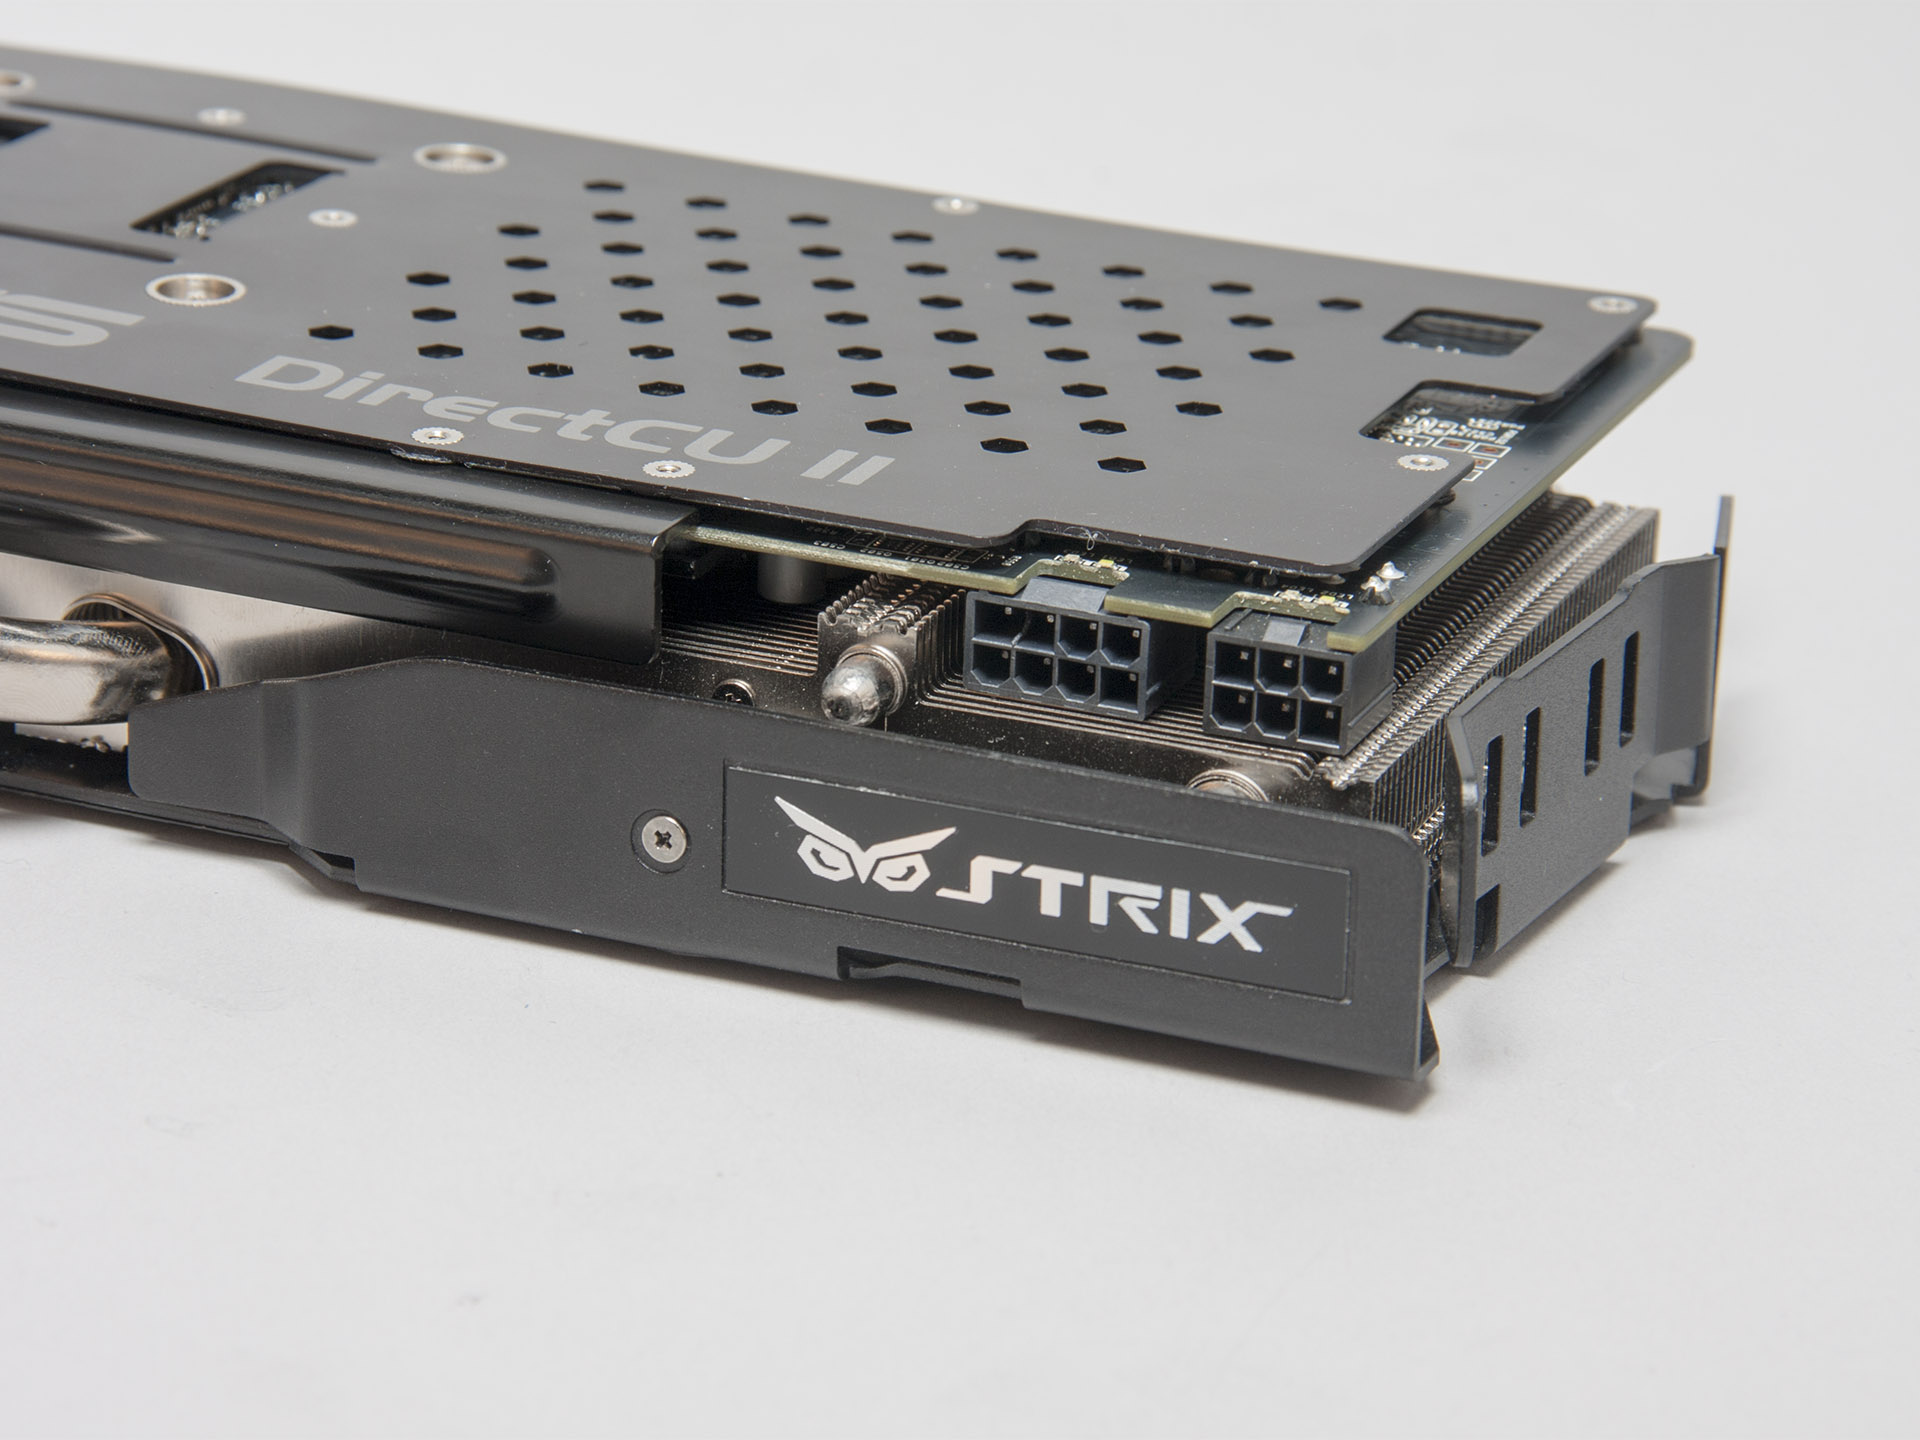 華碩 Strix GTX 780 顯示卡，風扇自動停轉靜音設計